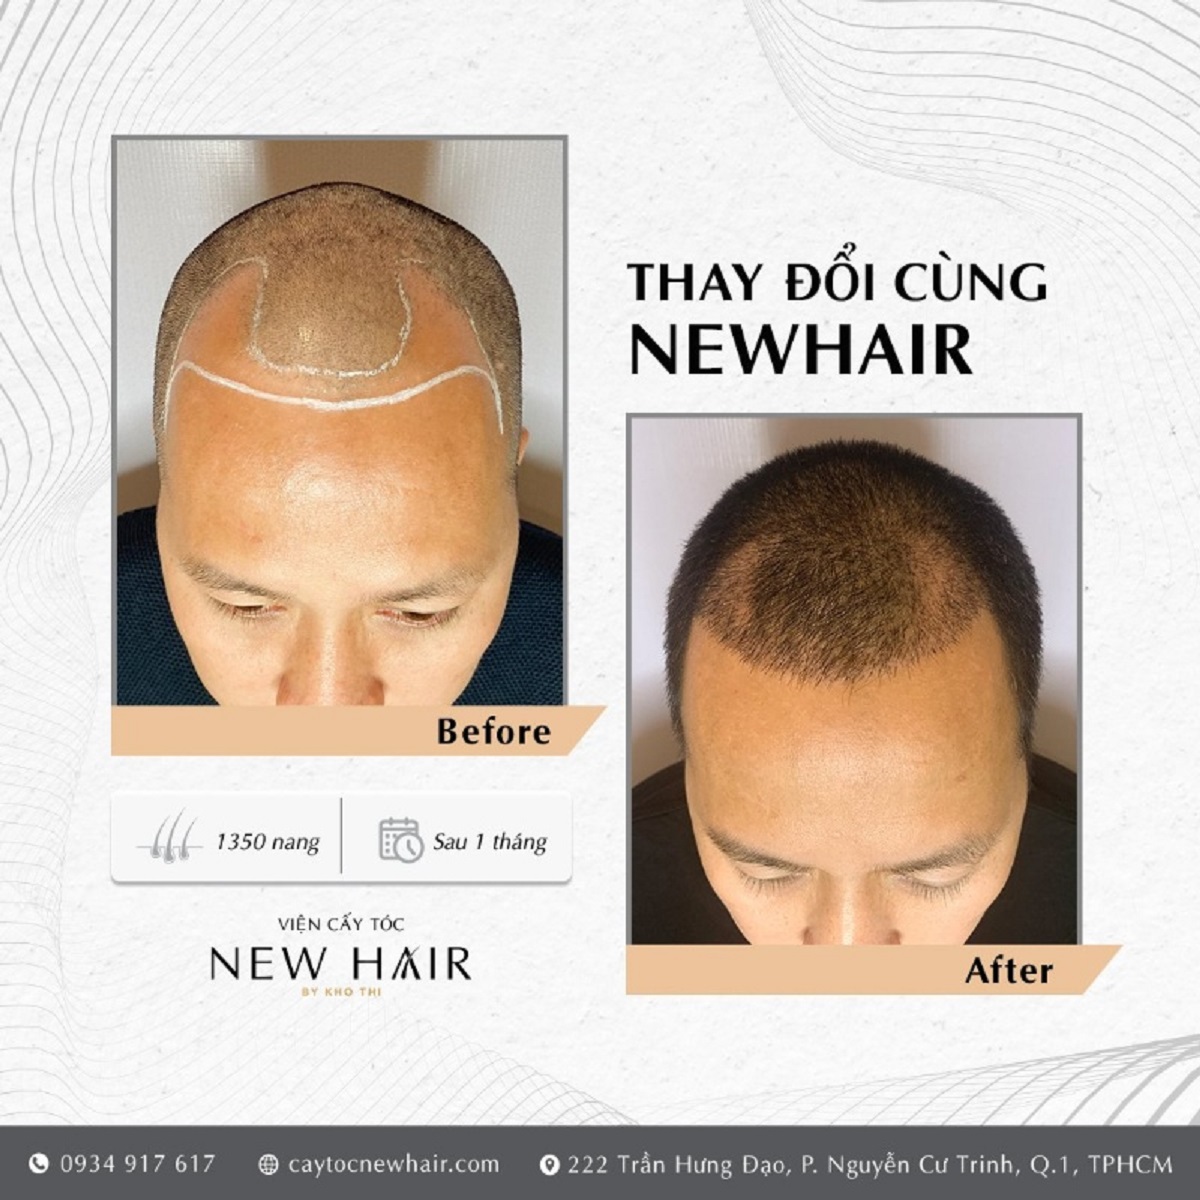 Trung tâm cấy tóc tự thân New Hair giúp khắc phục hói đầu - VnExpress Sức  khỏe